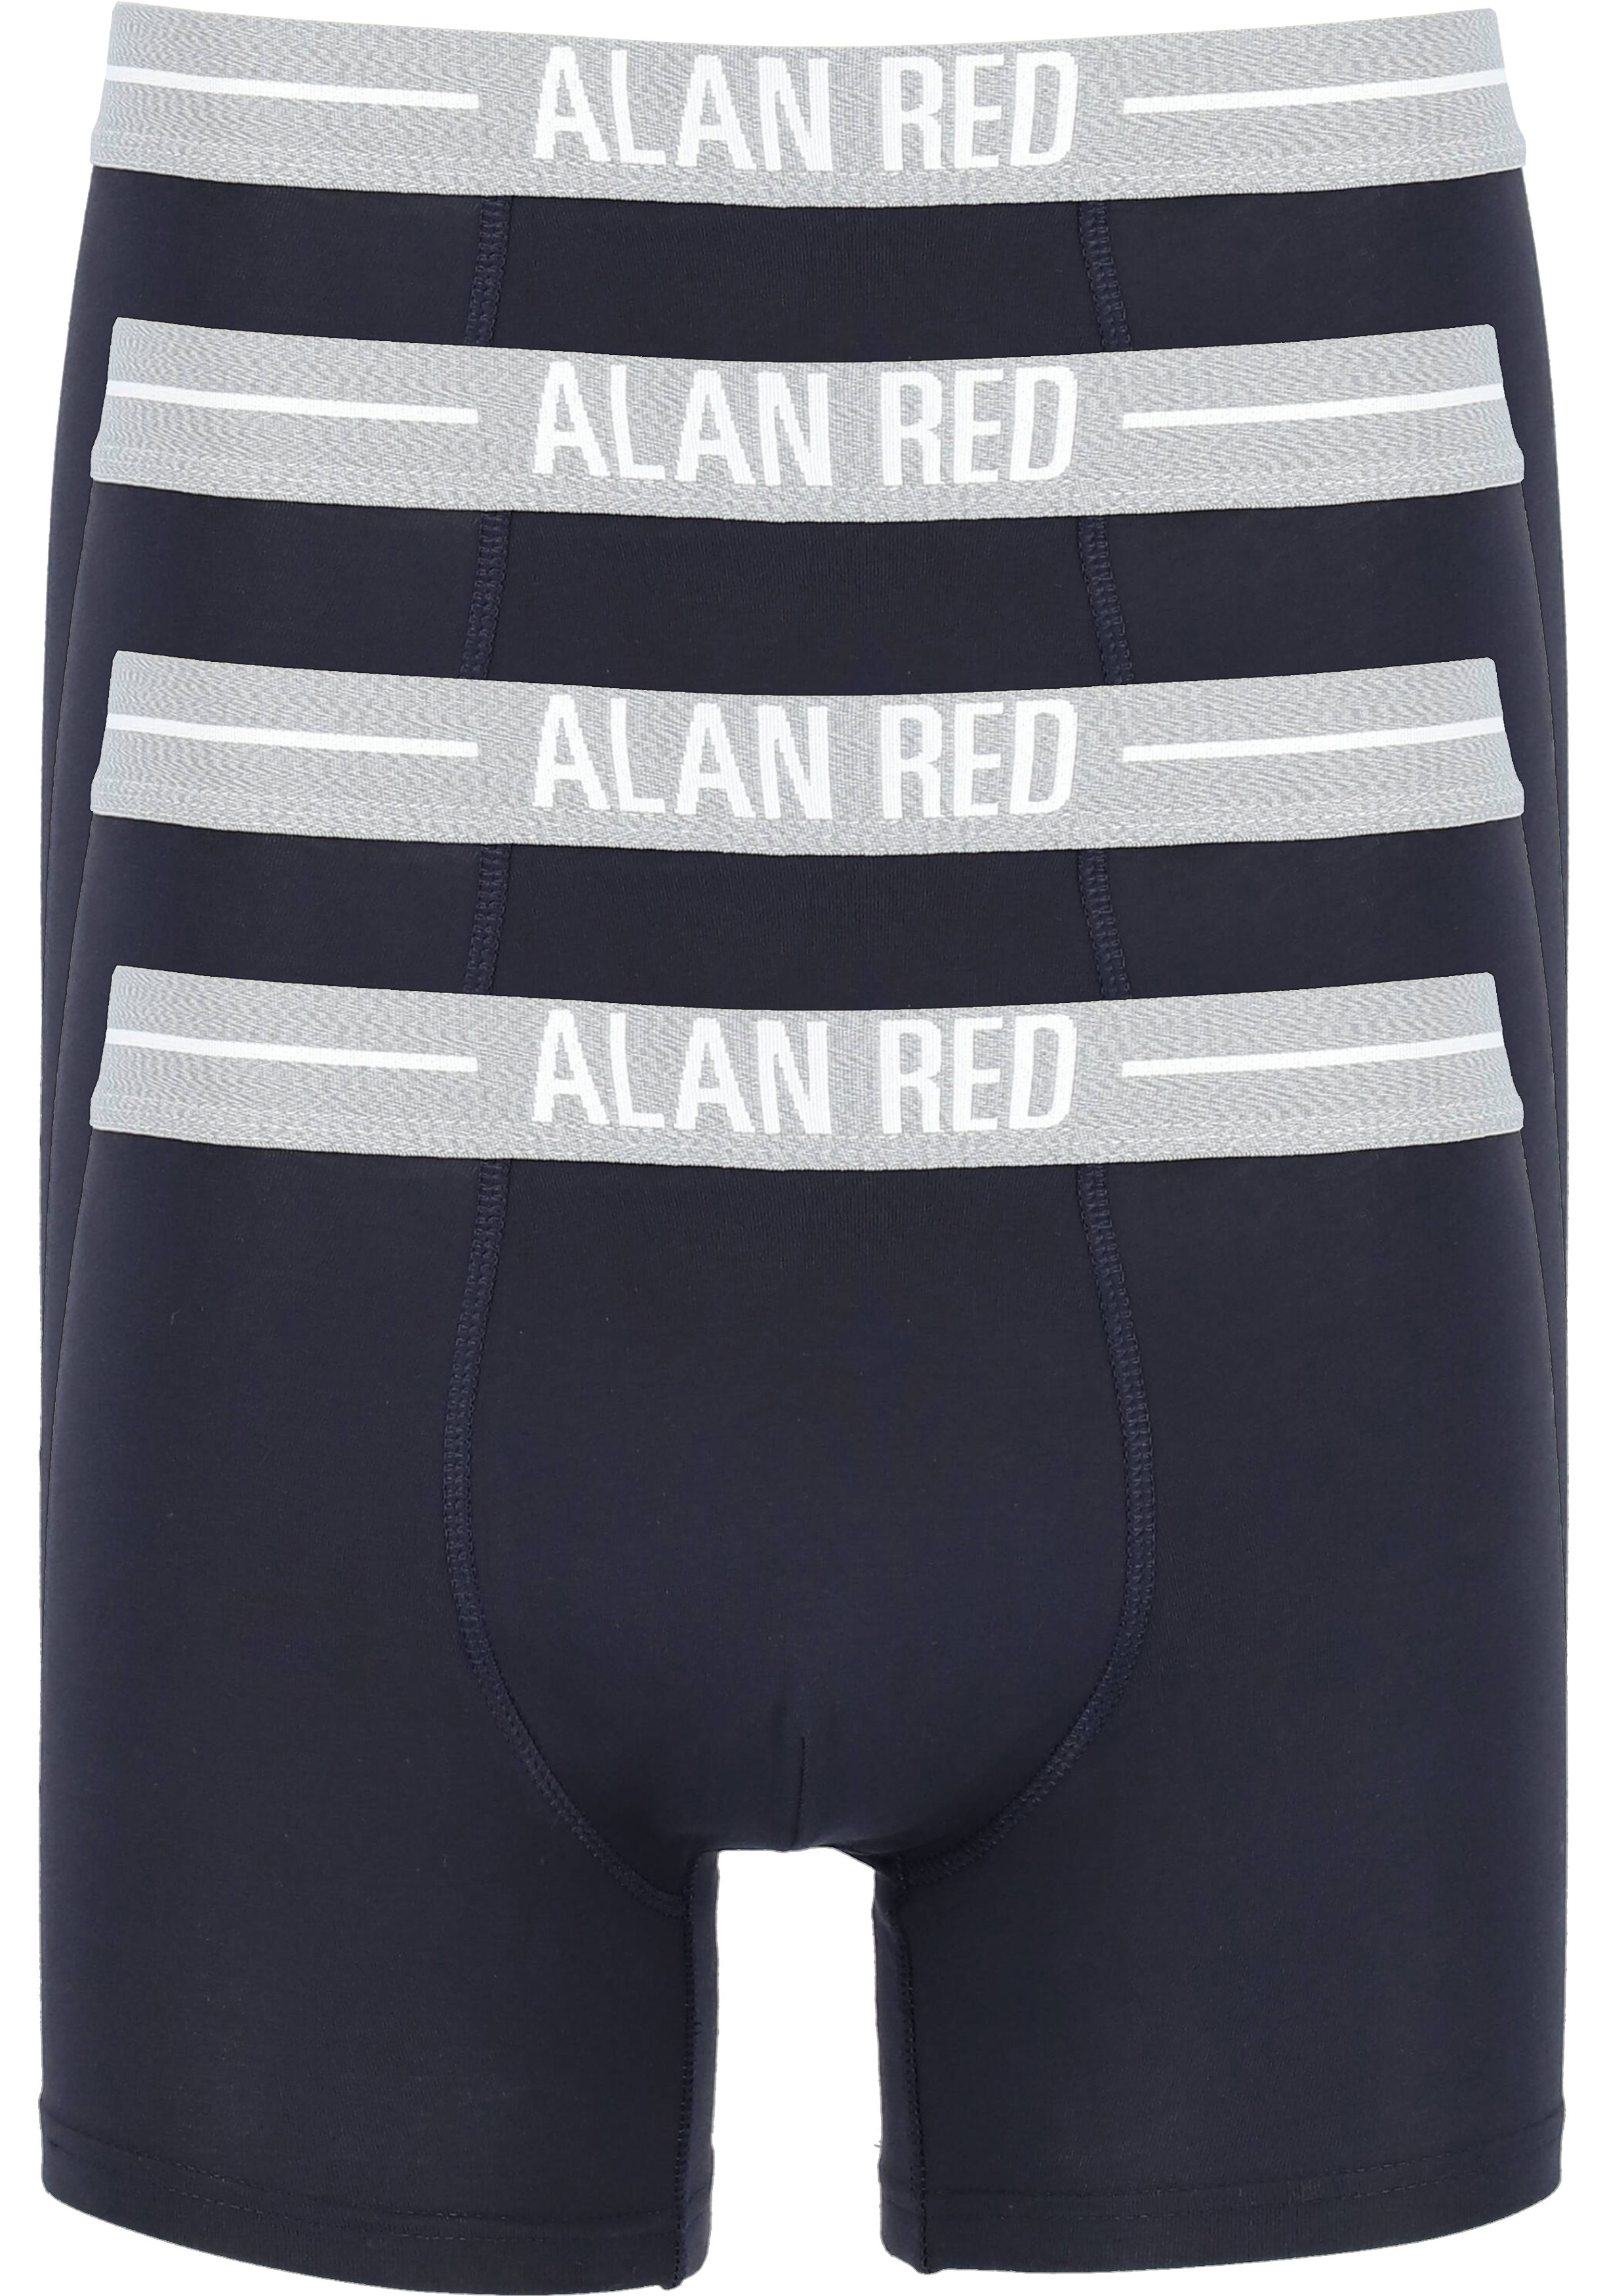 ALAN RED boxershorts (4-pack), donkerblauw